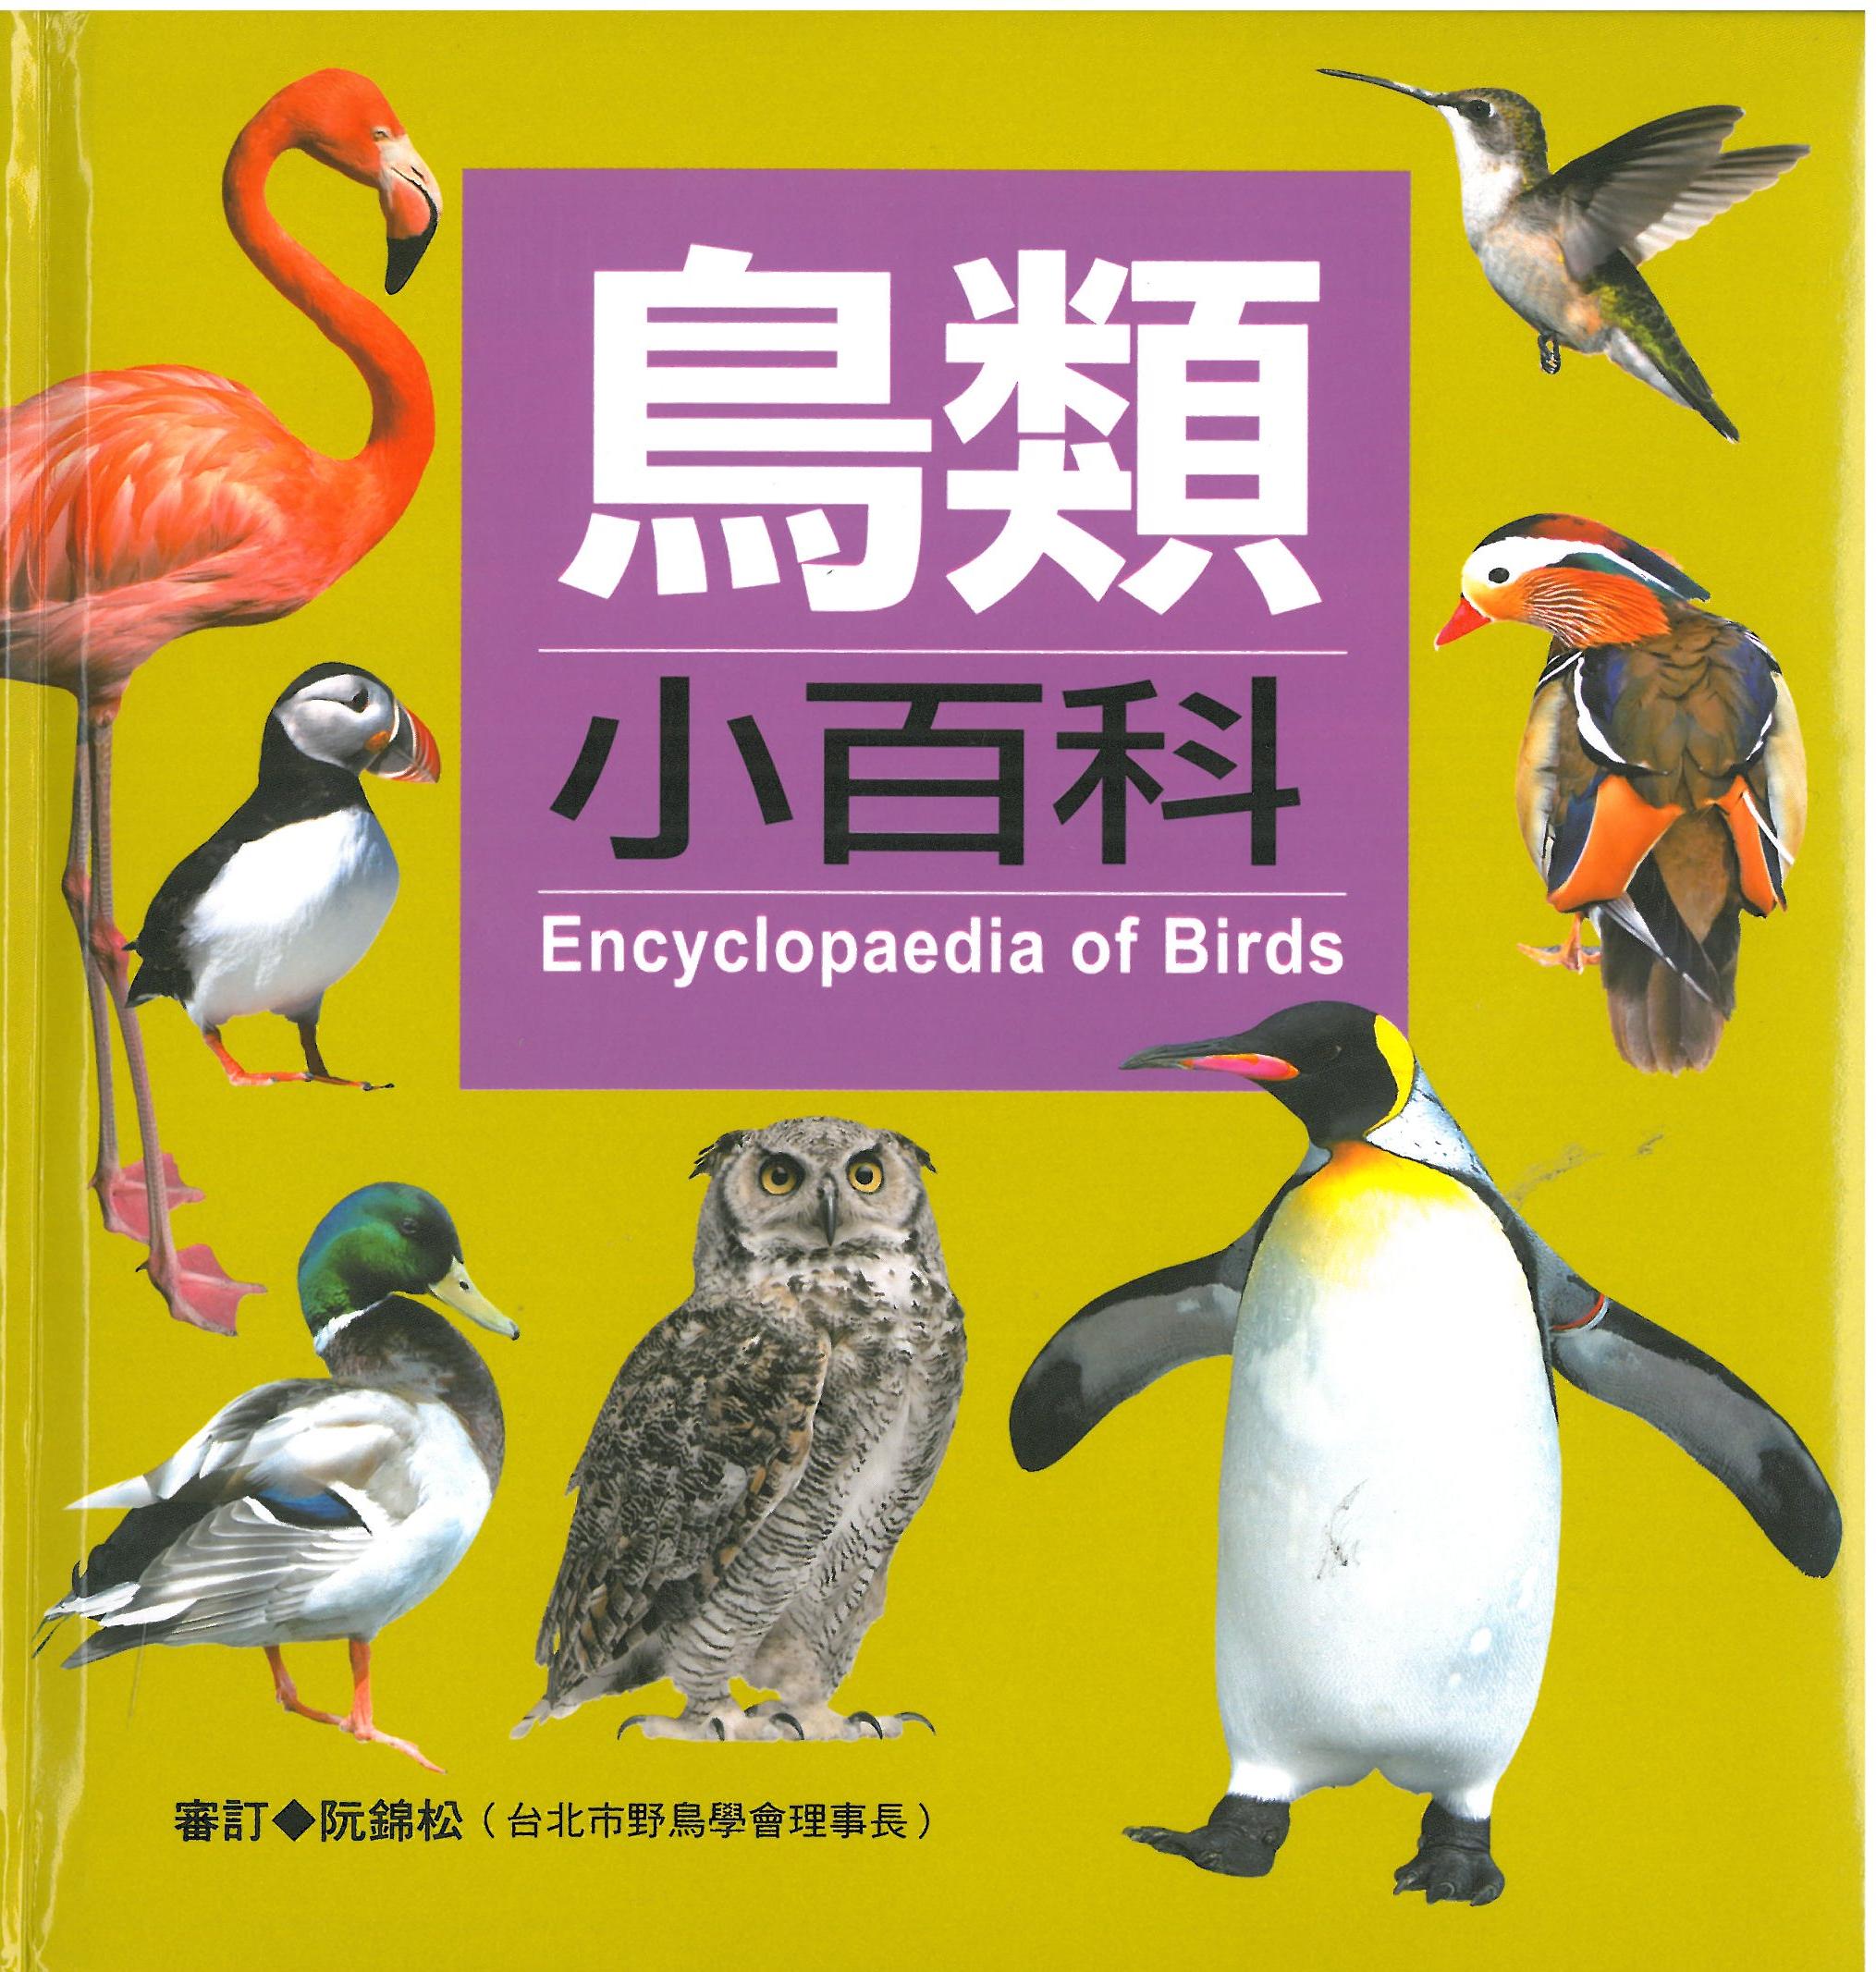 鳥類小百科